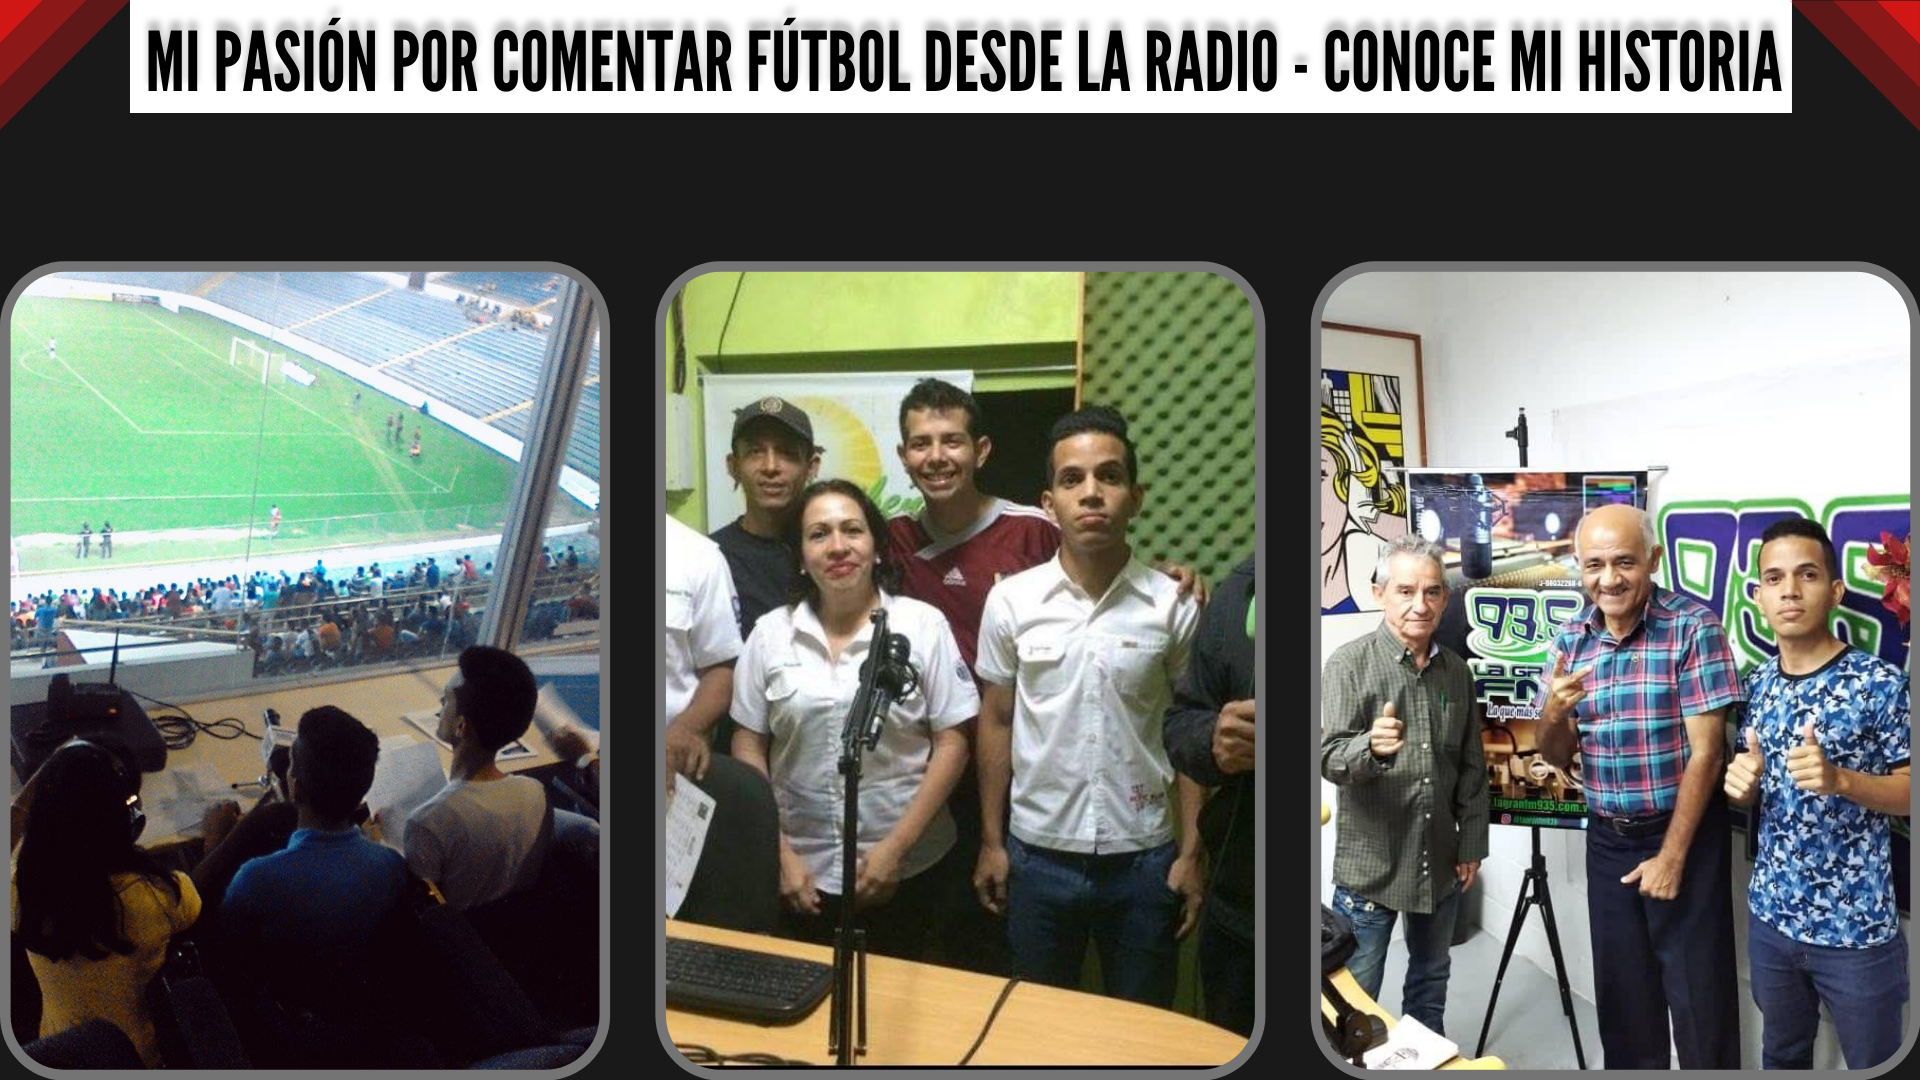 La pasión por comentar fútbol desde la radio - Conoce mi historia.png